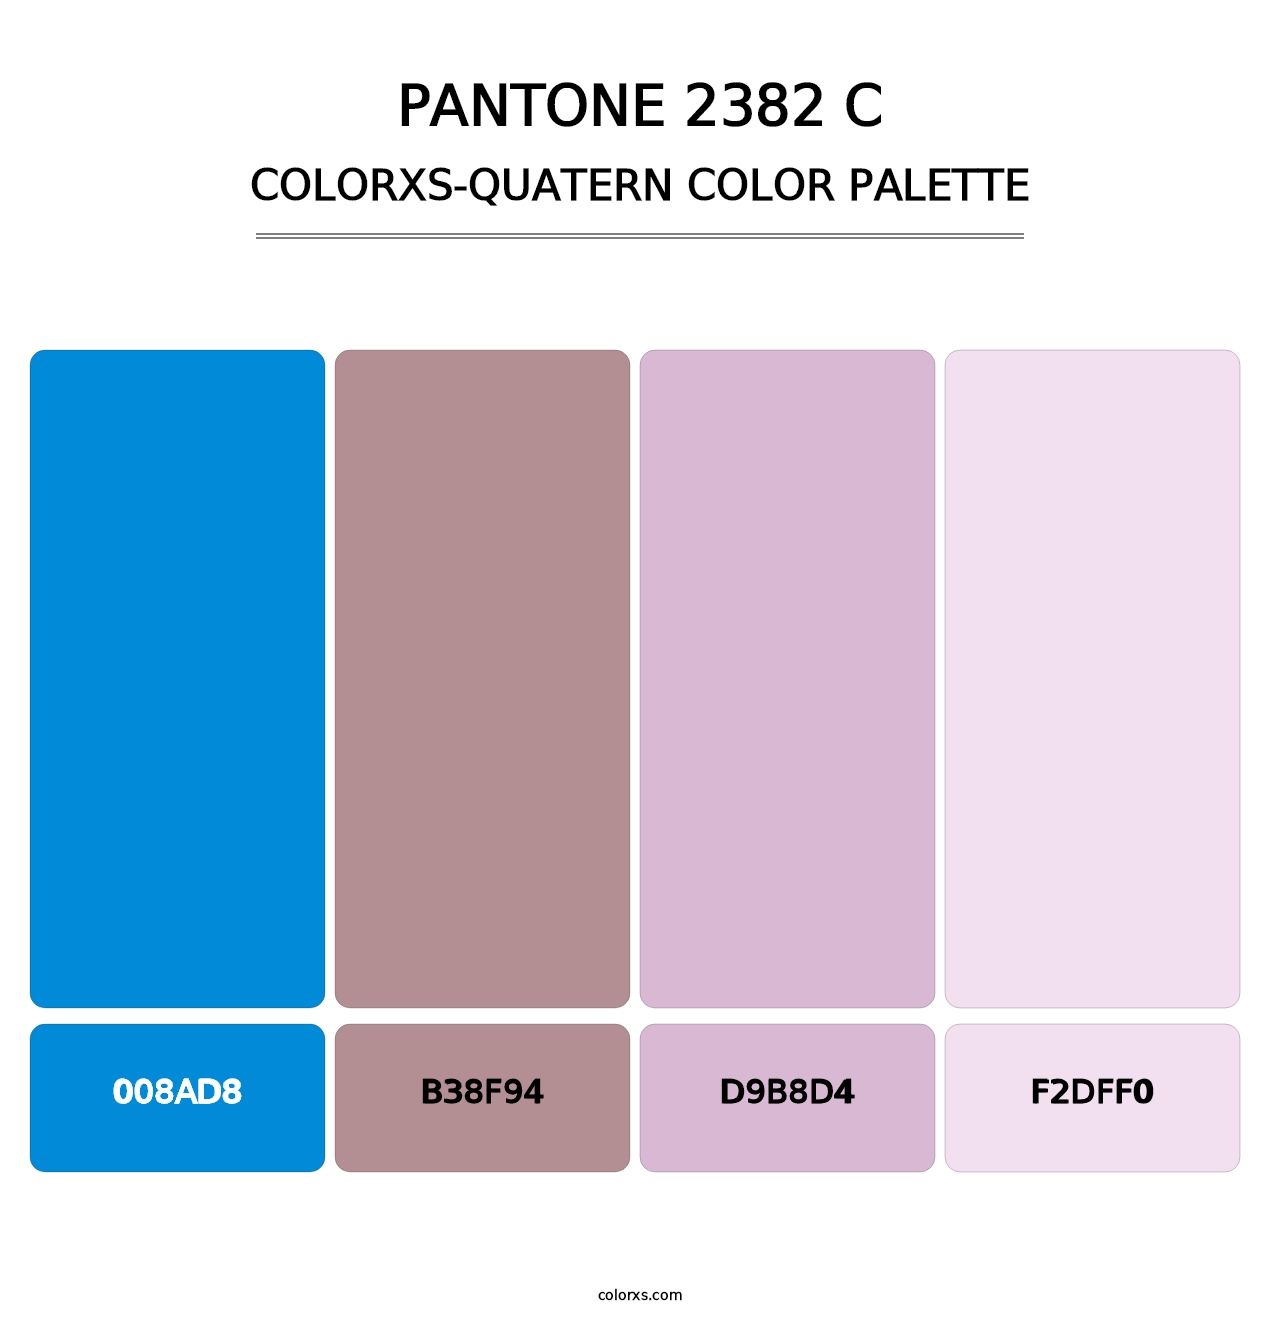 PANTONE 2382 C - Colorxs Quatern Palette